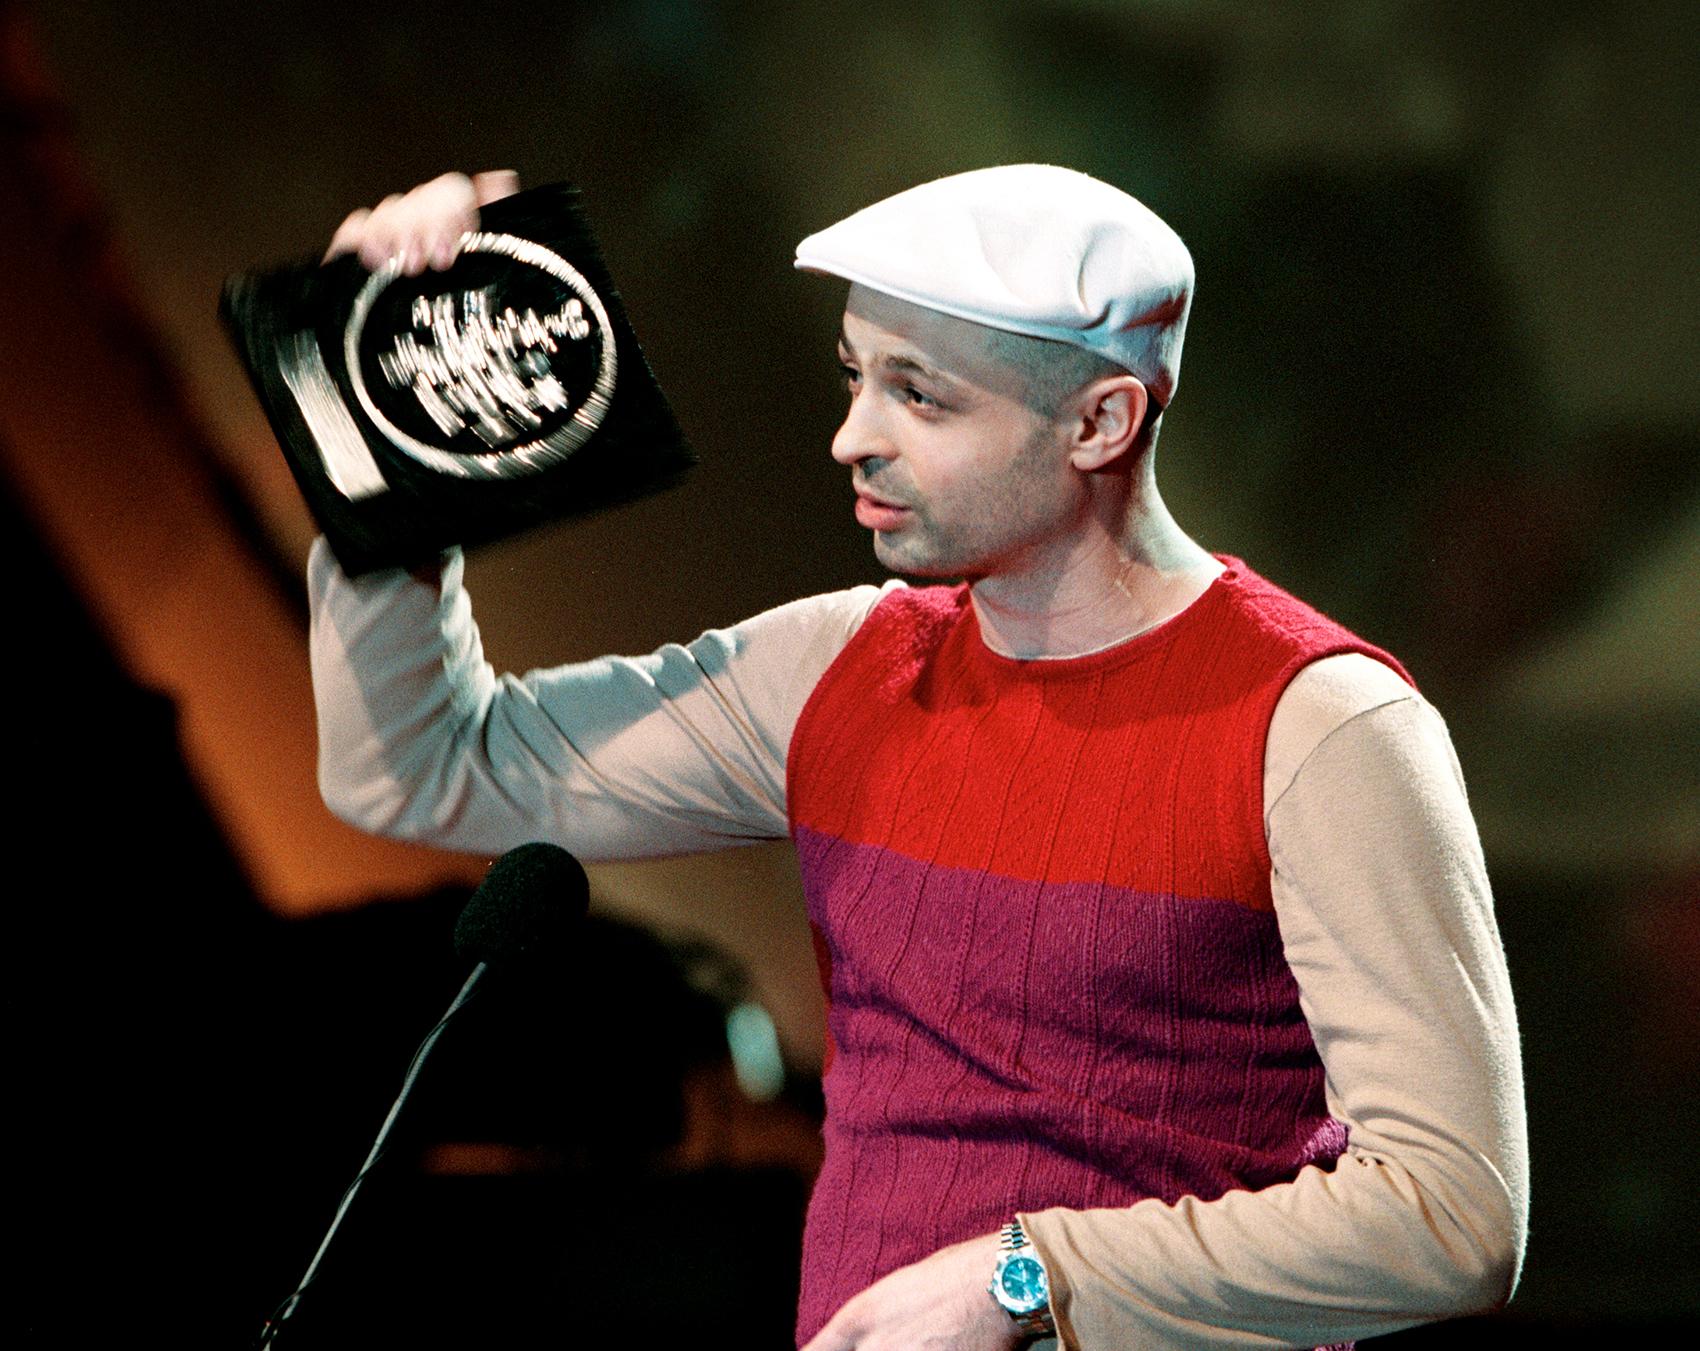 Början av 2000 1999 belönades Christian Falk med Grammis för Årets album, Årets producent och Årets modern dans för ”Quel bordel”. Han fick också Grammis för Årets klubb/dans 2006 med ”People Say”.